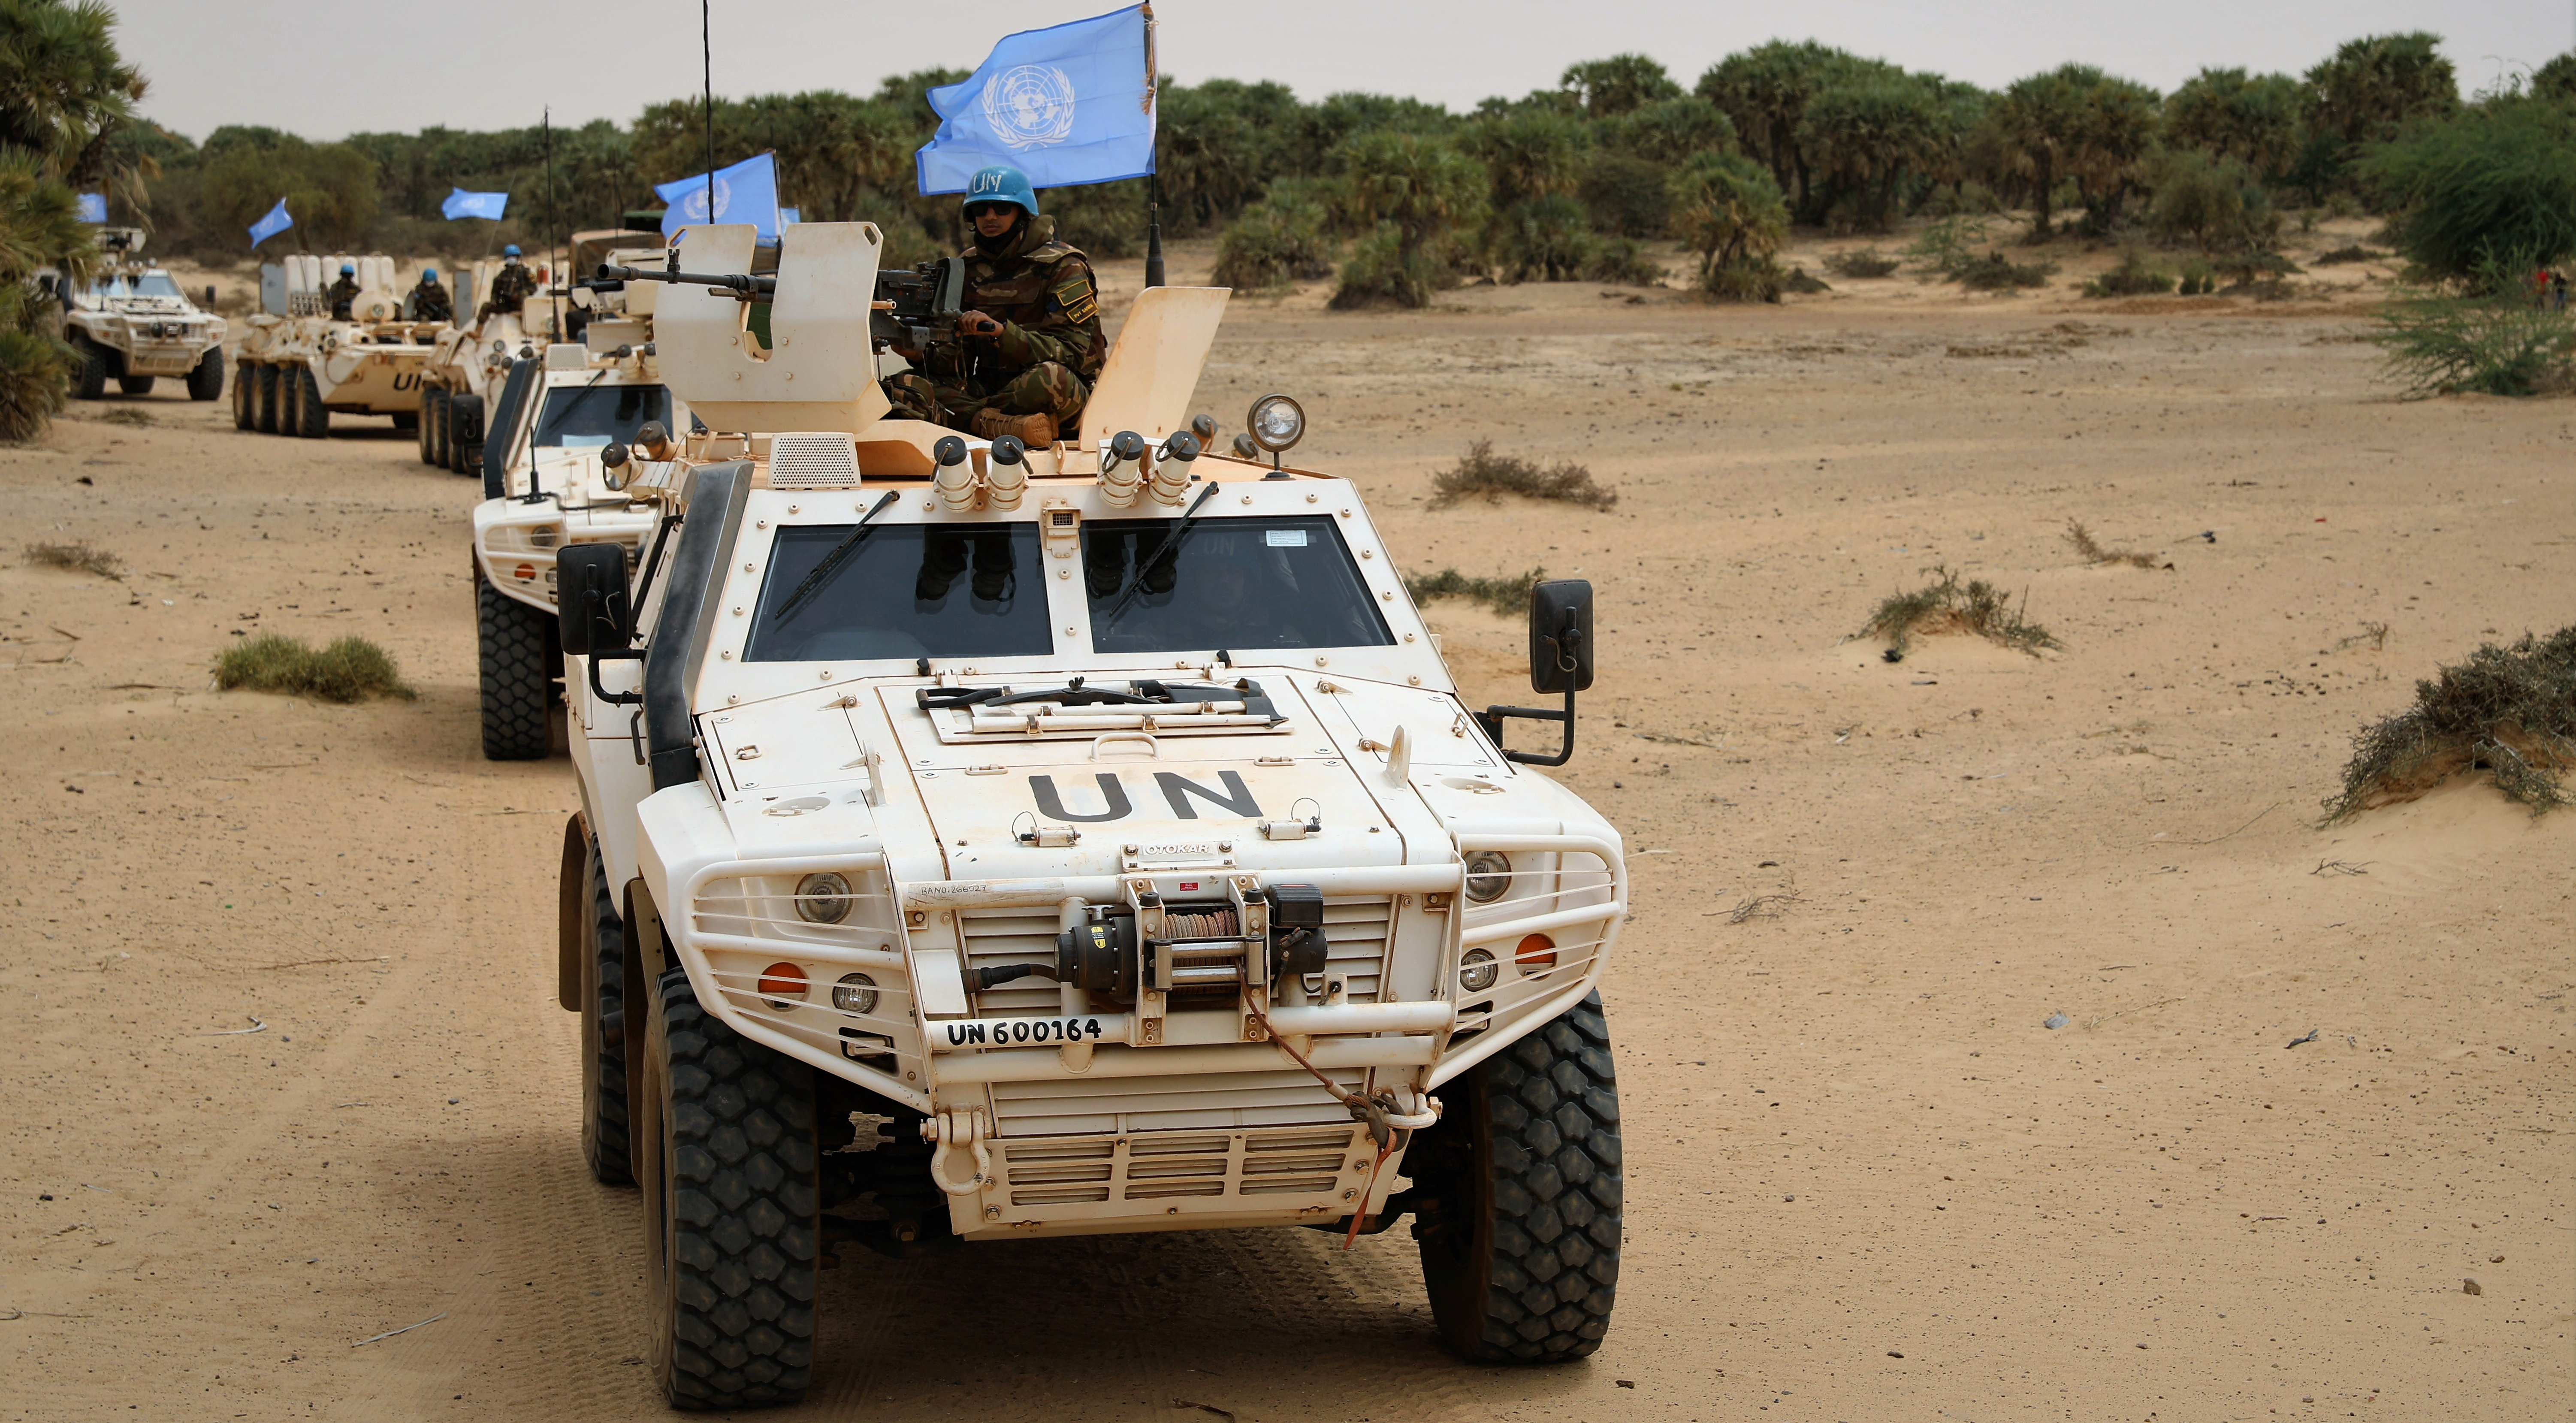 Gespräche im Norden Malis sind dringend wieder aufzunehmen